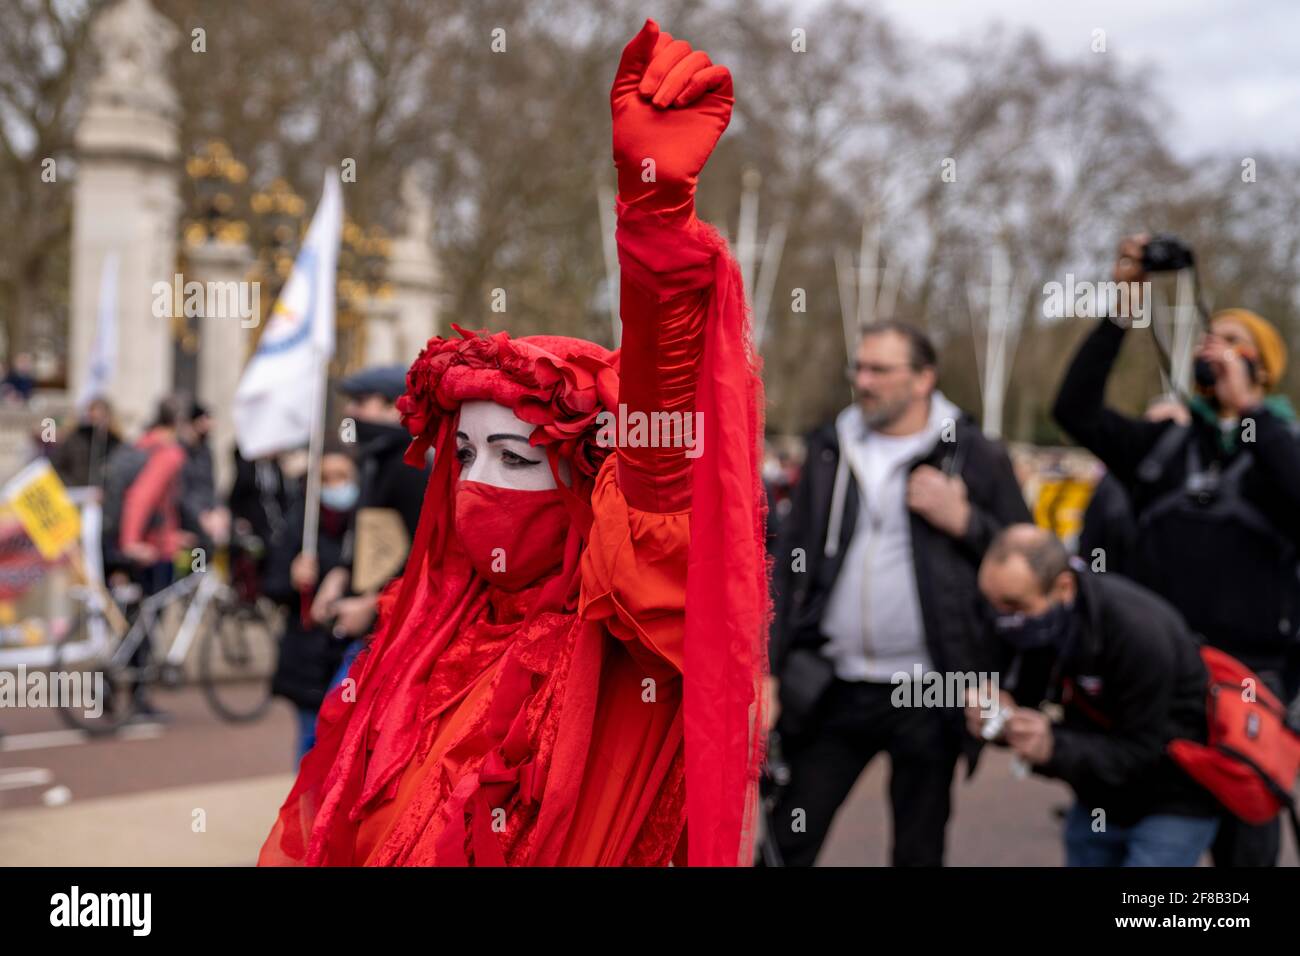 LONDRES, Royaume-Uni - 03ème avril 2021 : la Brigade Rouge, la rébellion d'extinction. Des manifestants vêtus de robes rouges aux visages blancs tuent le projet de loi en signe de protestation. Banque D'Images